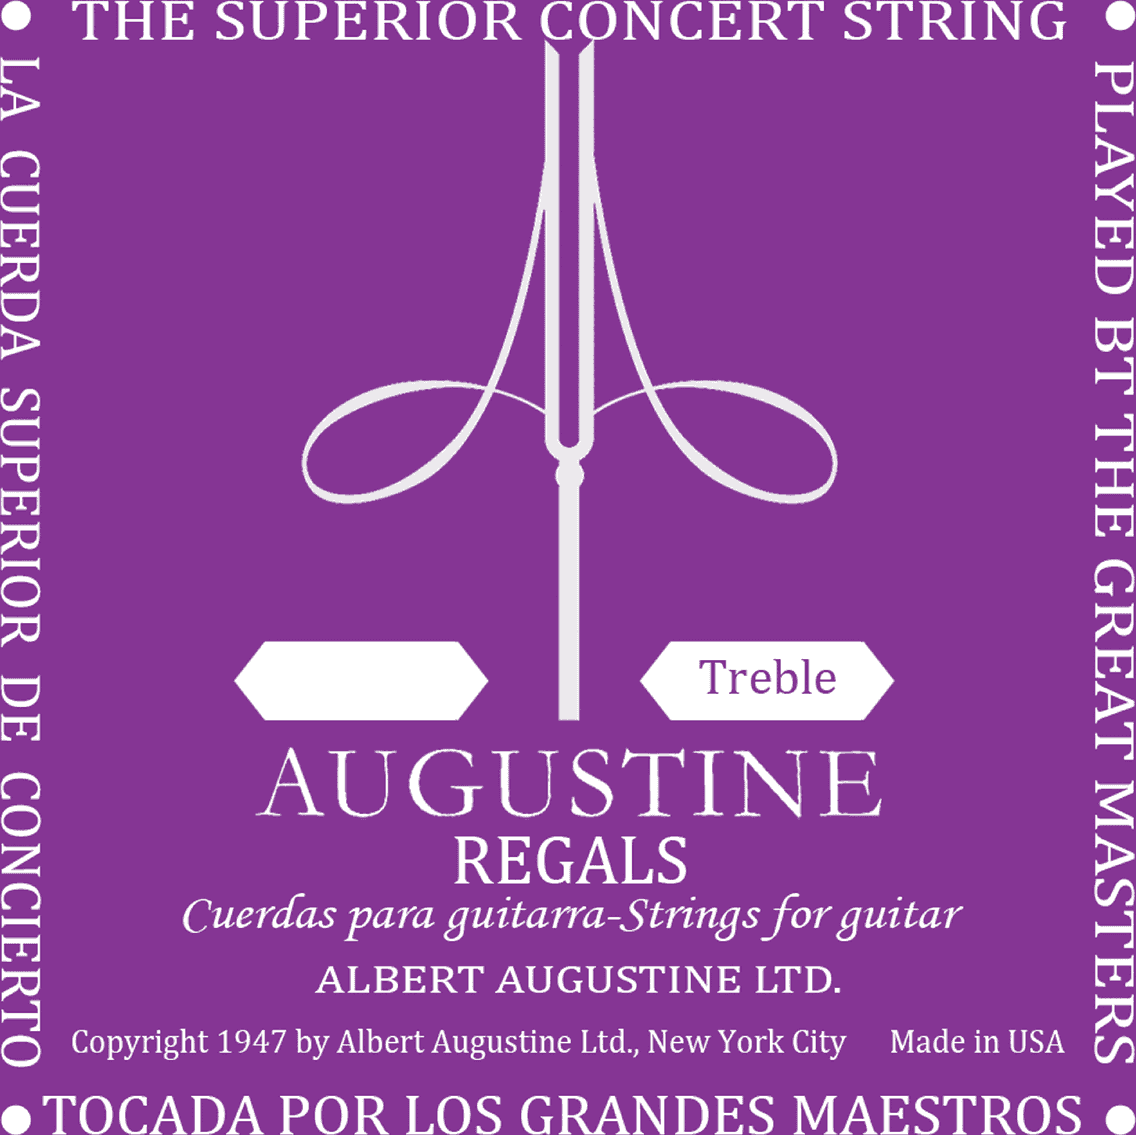 Augustine Corde Au DÉtail Regal Mi 1 - Nylon guitar strings - Main picture